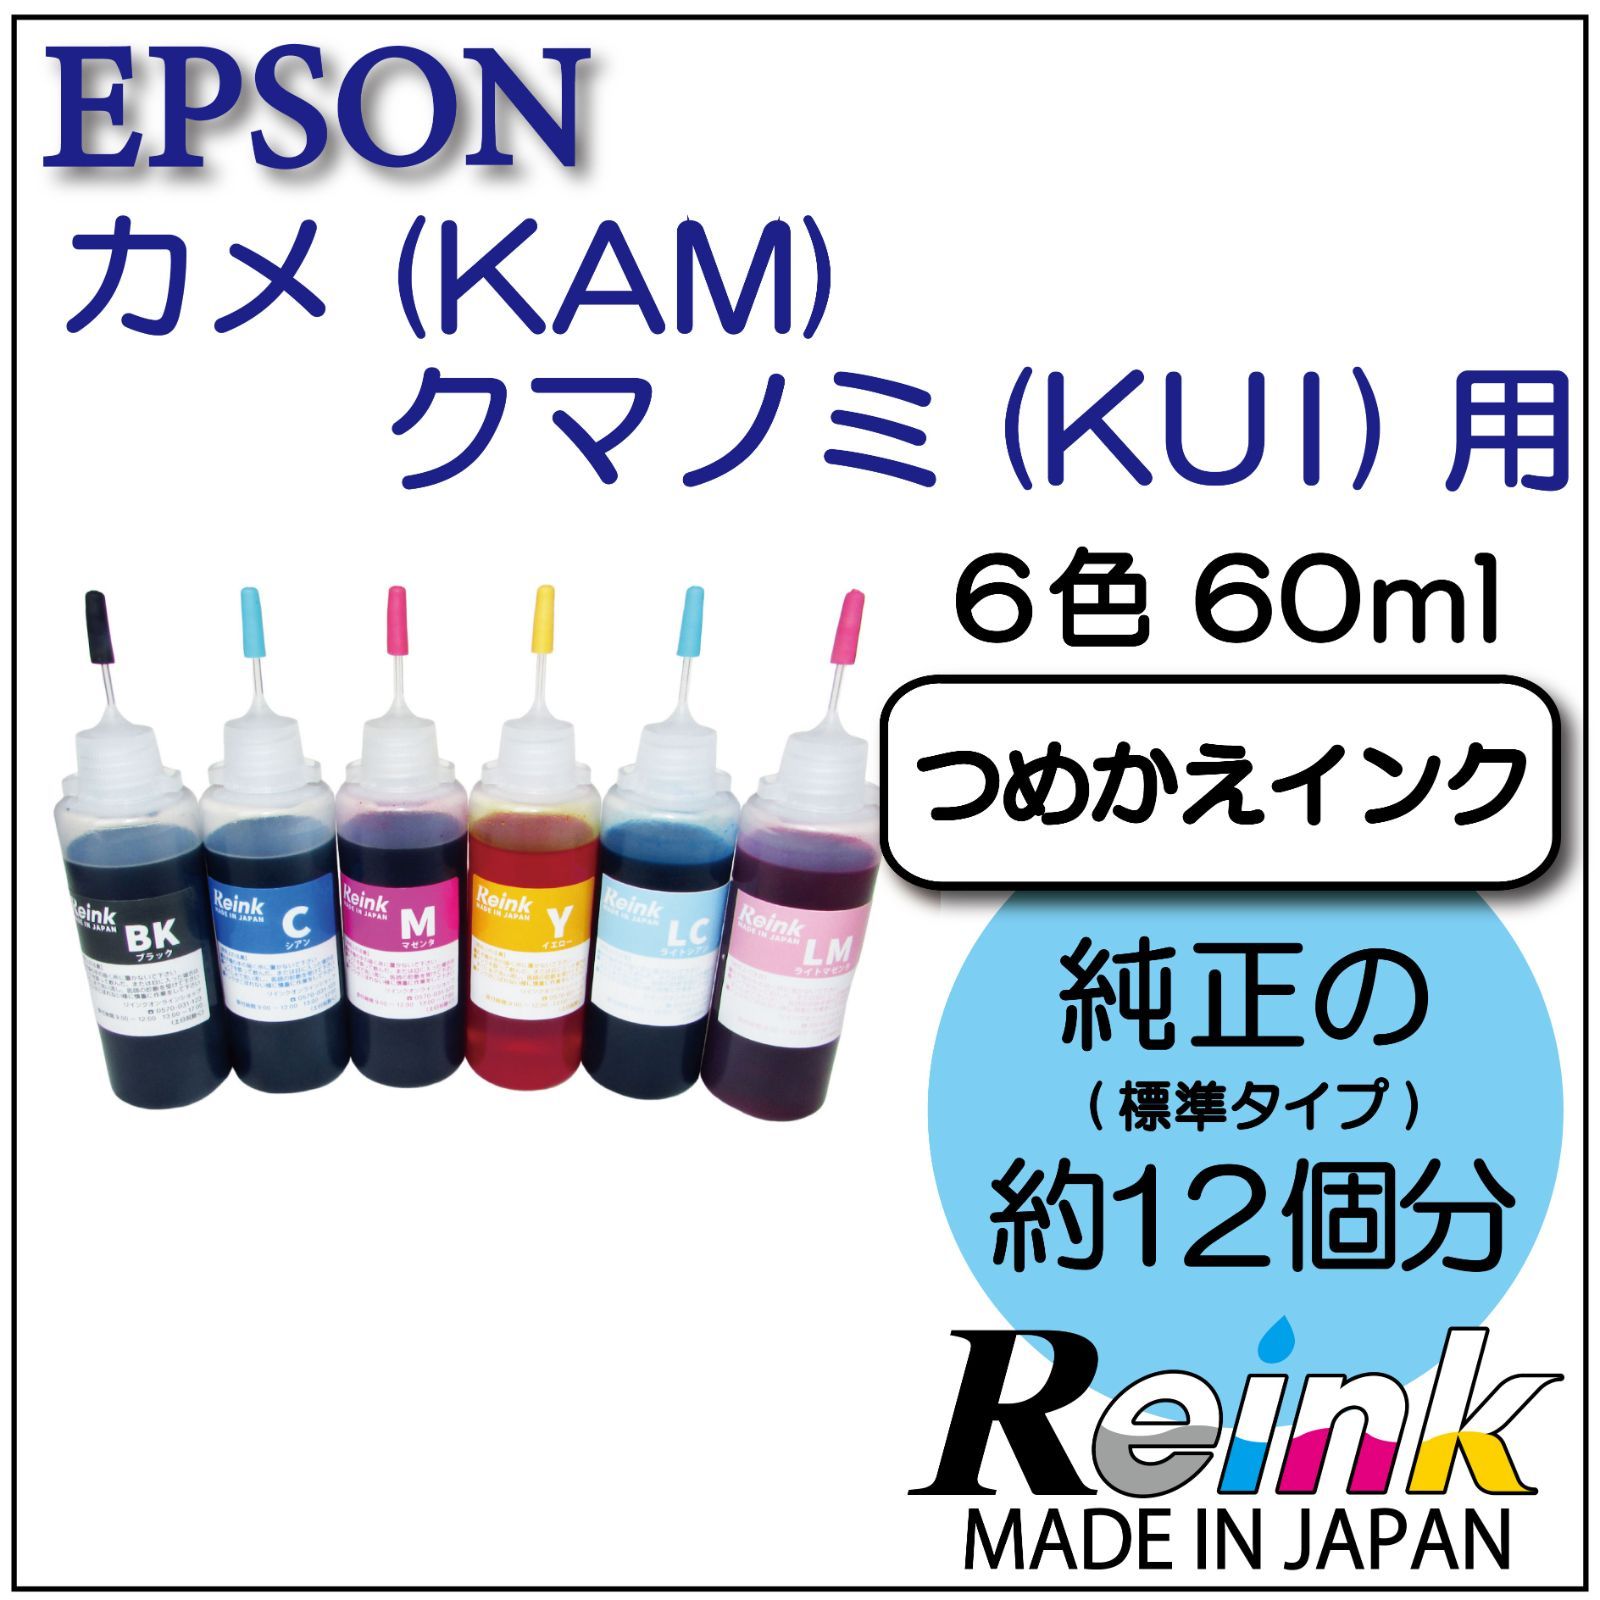 エプソン プリンター インク カメ(KAM)クマノミ(KUI) 用 詰め替え ...